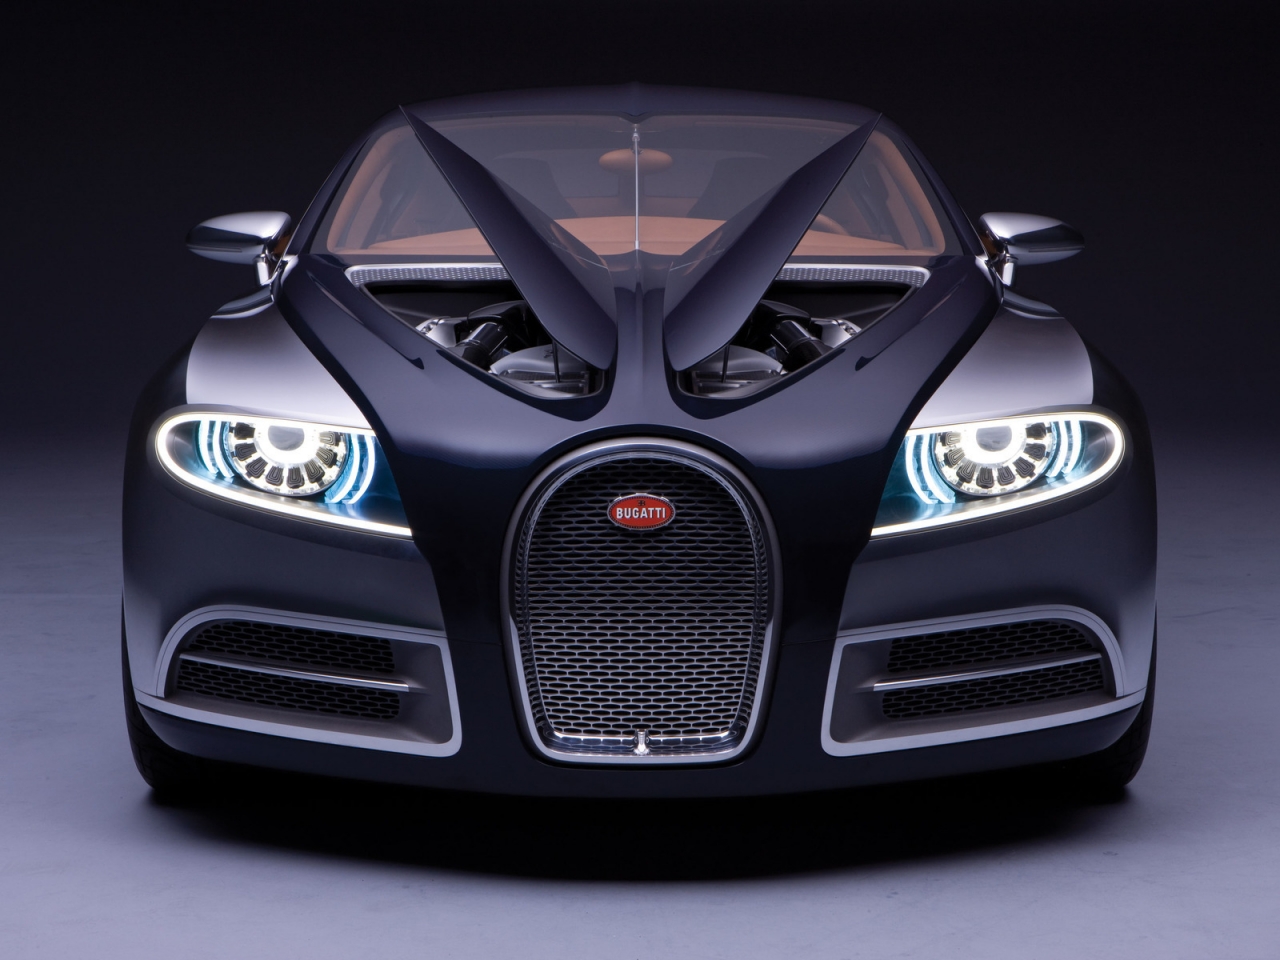 Bugatti for 1280 x 960 resolution